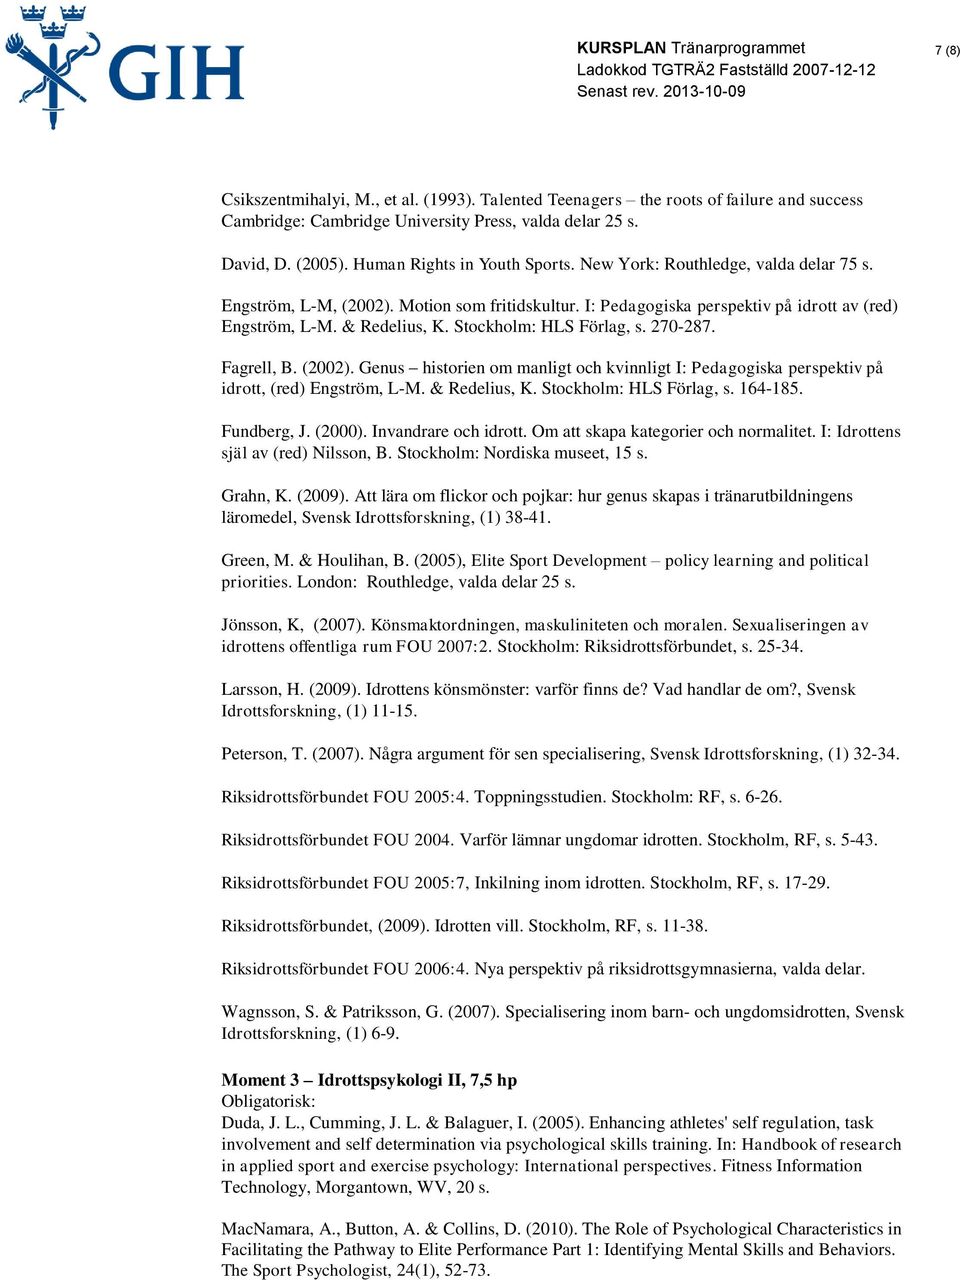 Fagrell, B. (2002). Genus historien om manligt och kvinnligt I: Pedagogiska perspektiv på idrott, (red) Engström, L-M. & Redelius, K. Stockholm: HLS Förlag, s. 164-185. Fundberg, J. (2000).